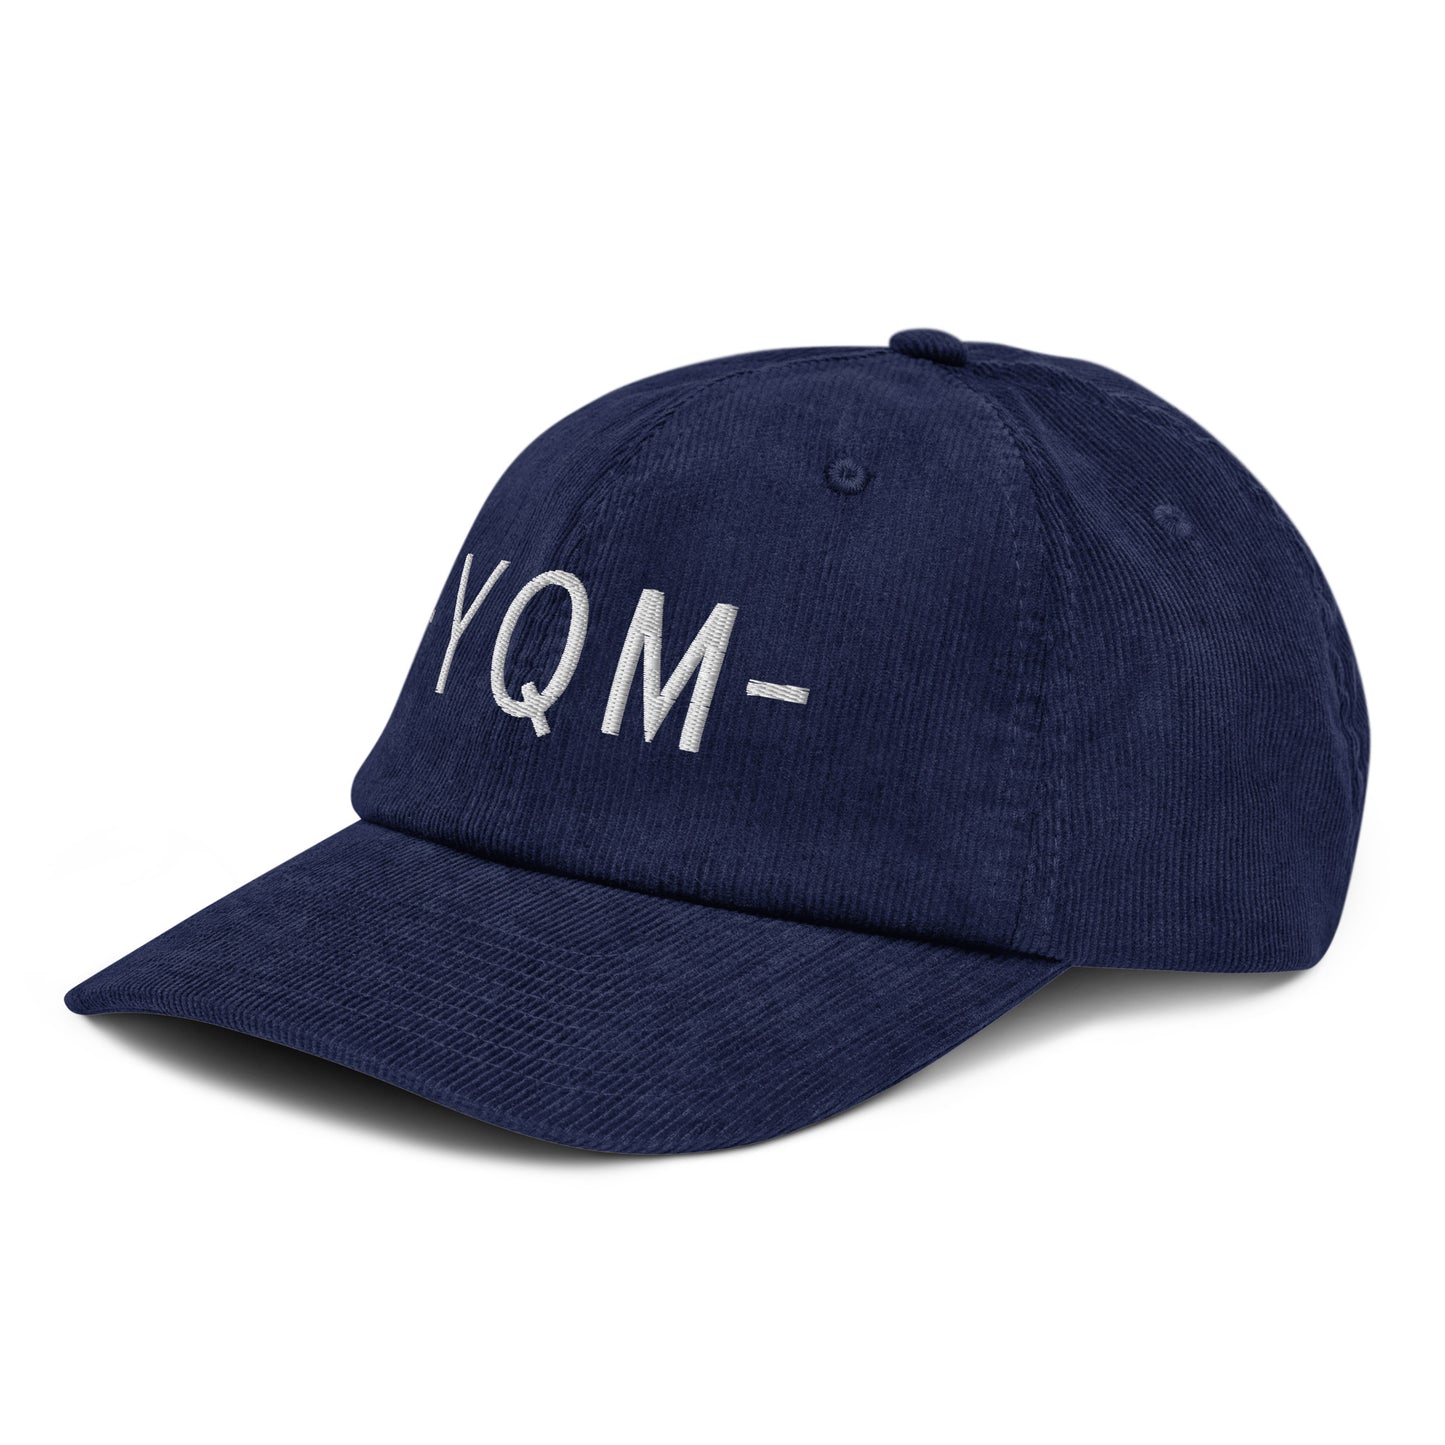 Souvenir Corduroy Hat - White • YQM Moncton • YHM Designs - Image 01